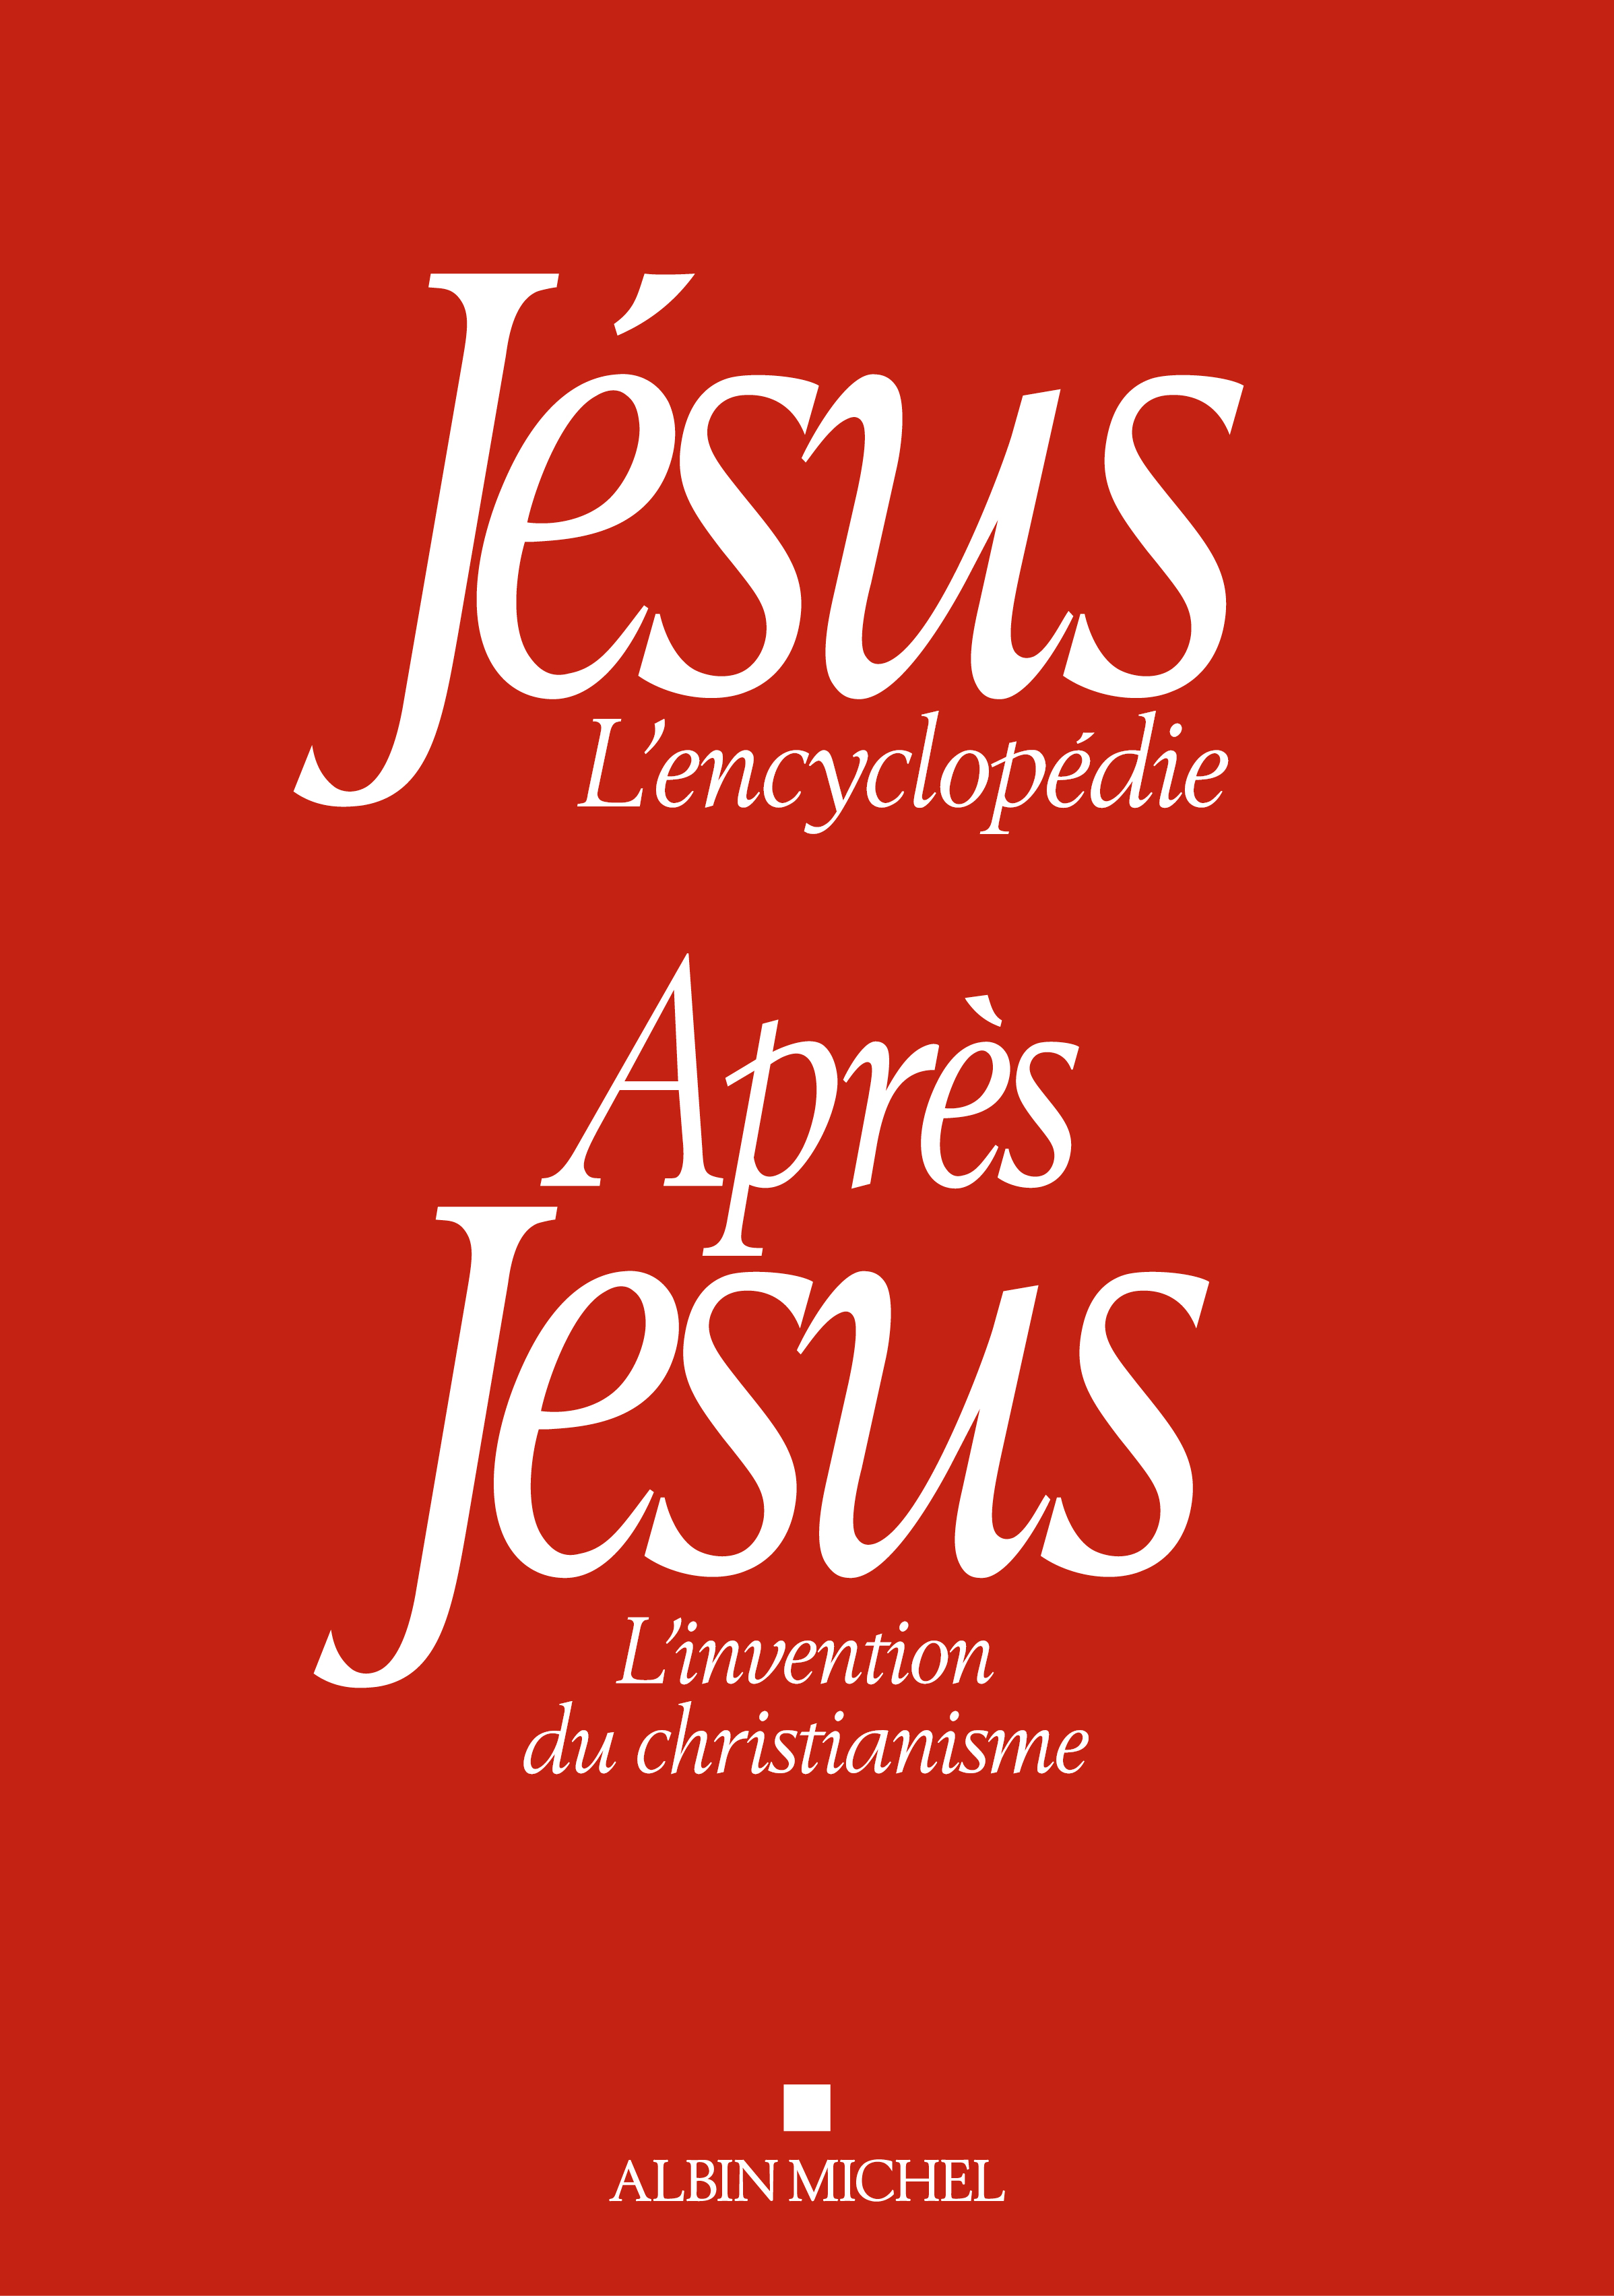 Couverture du livre Coffret "Jésus" et "Après Jésus"